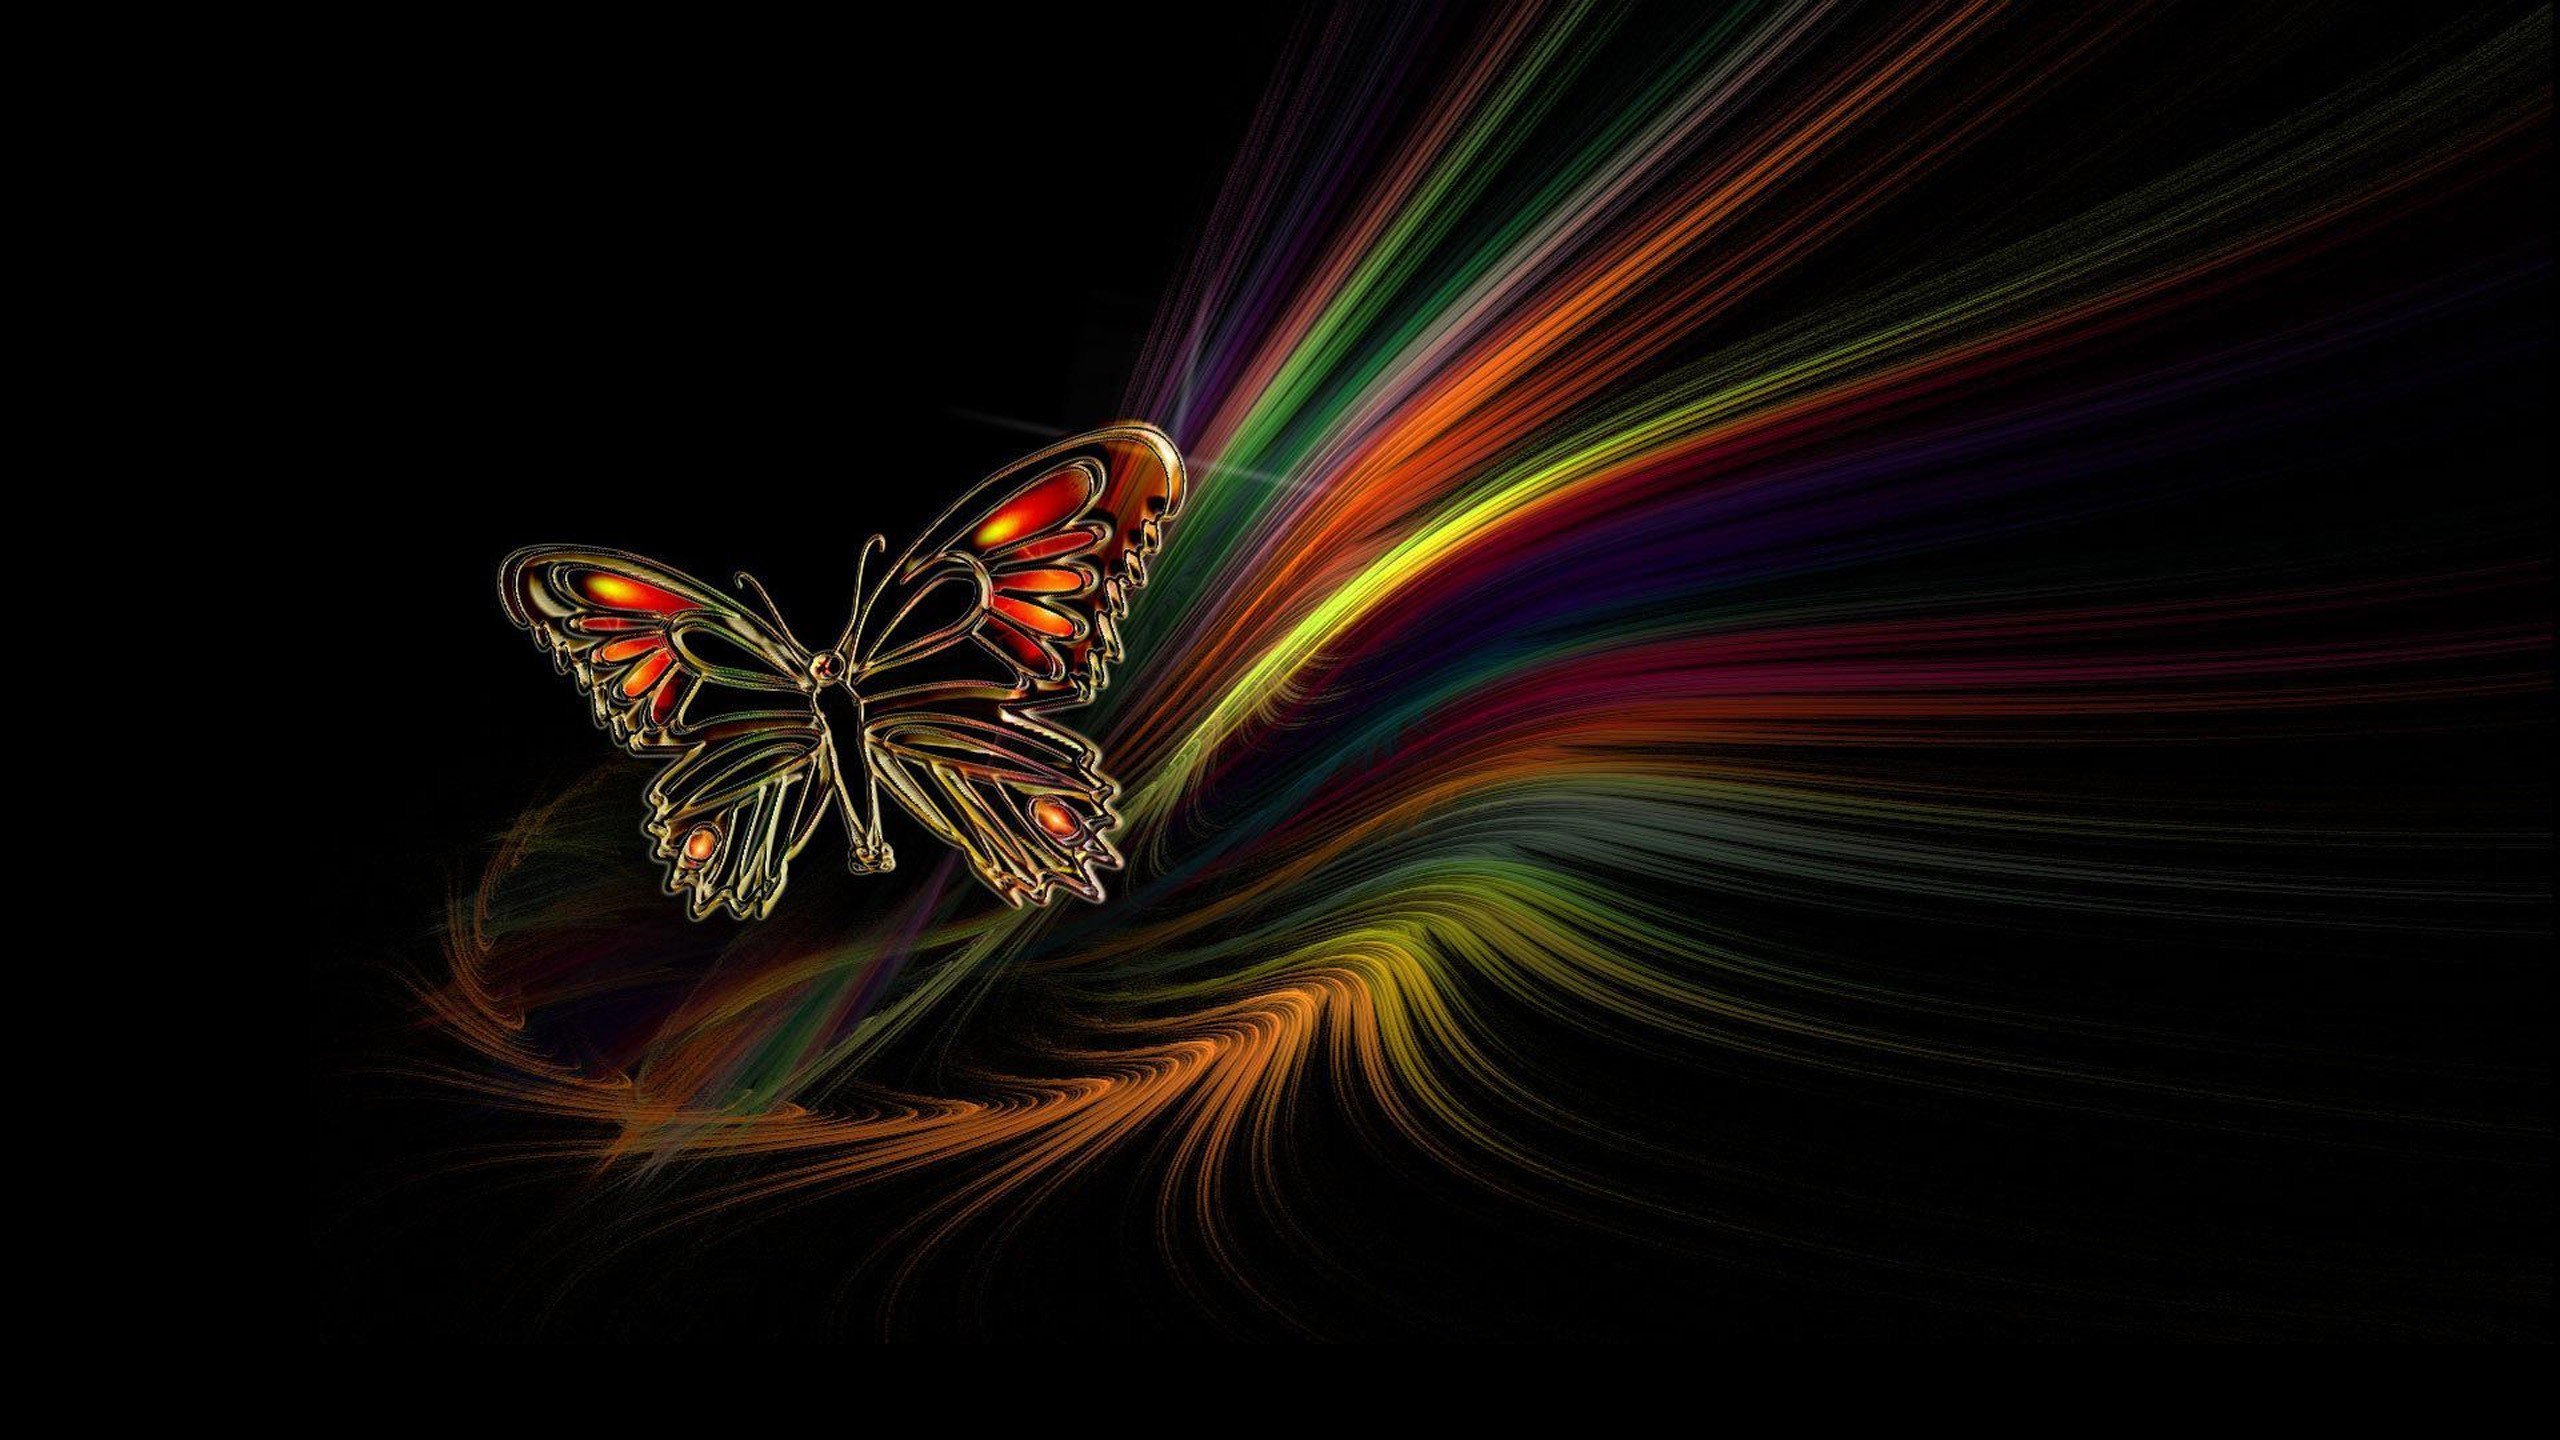 Красивые обои телефон на весь экран необычные. Бабочка на темном фоне. Бабочка яркая на черном фоне. Яркие бабочки. Радужная бабочка.